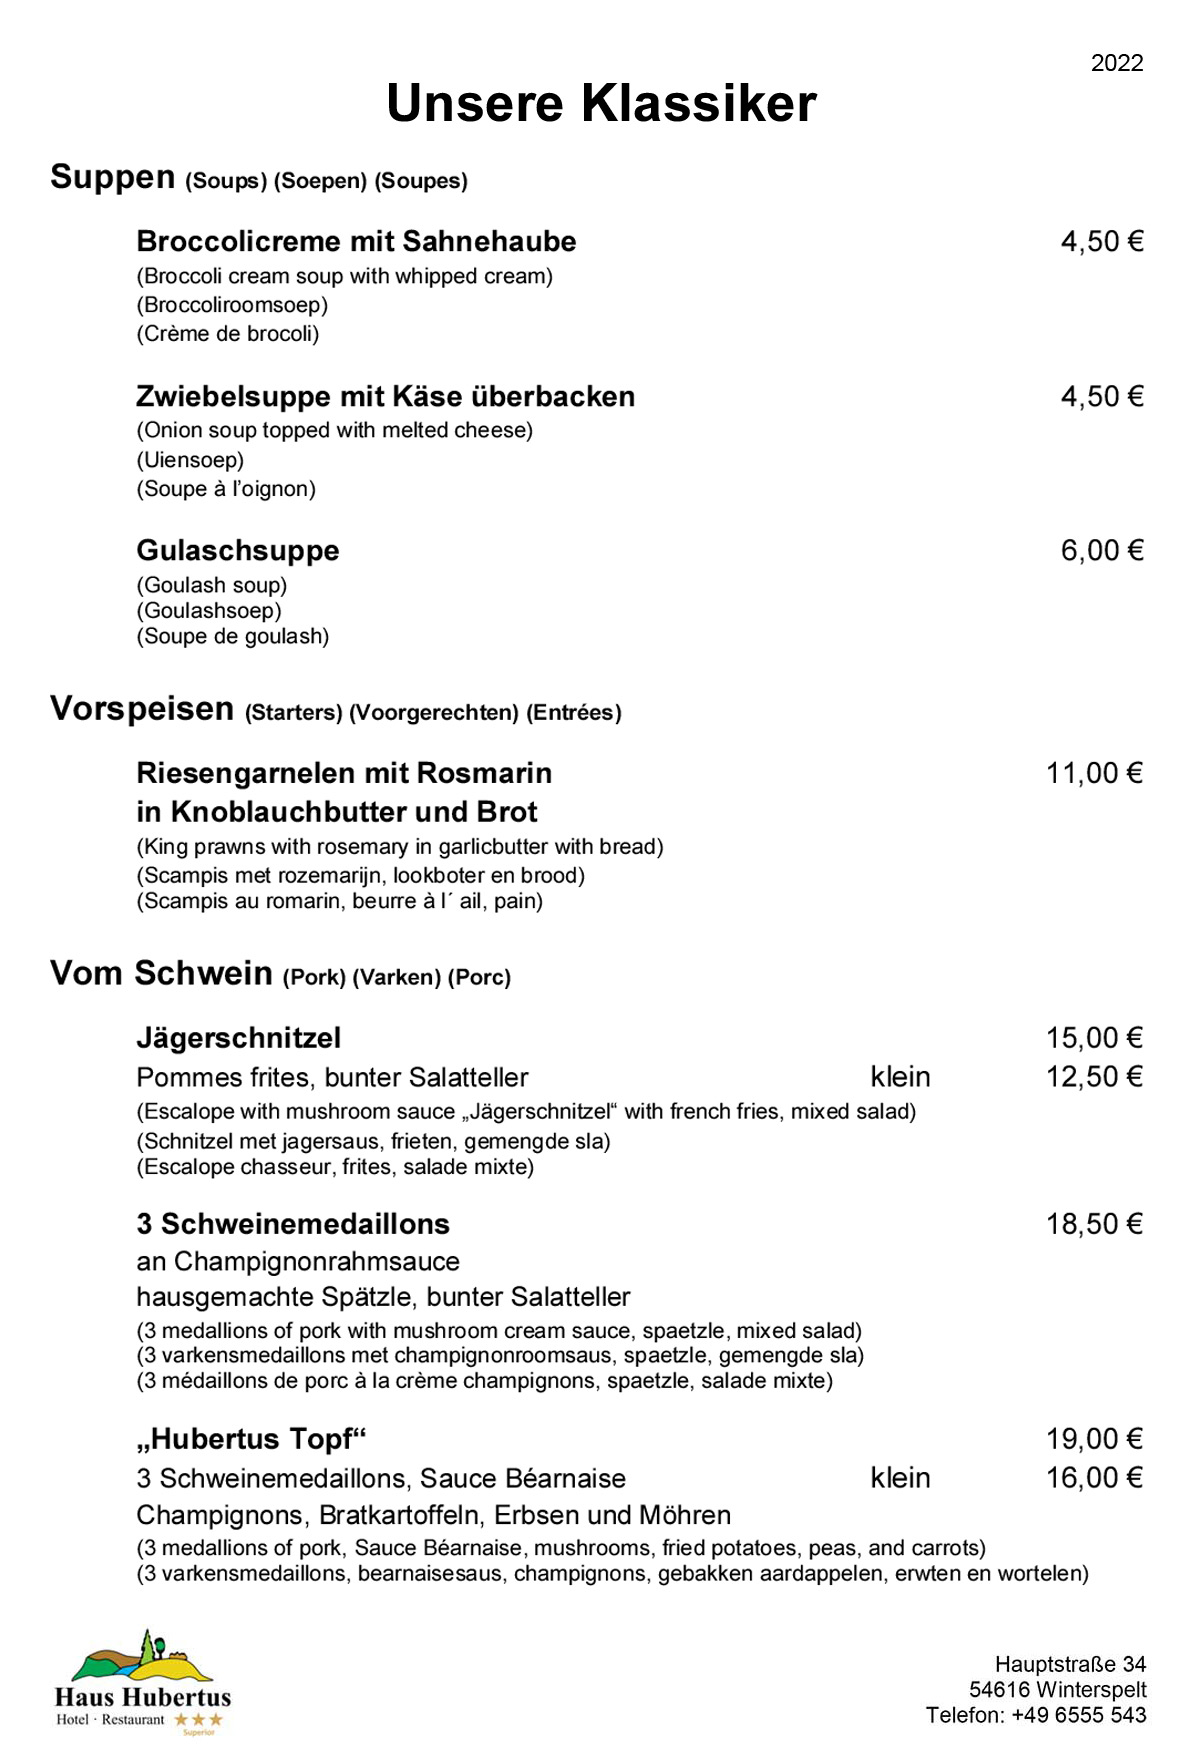 Hotel - Restaurant Haus Hubertus - Speisekarte 07/2022 - Die Klassiker - Seite 1